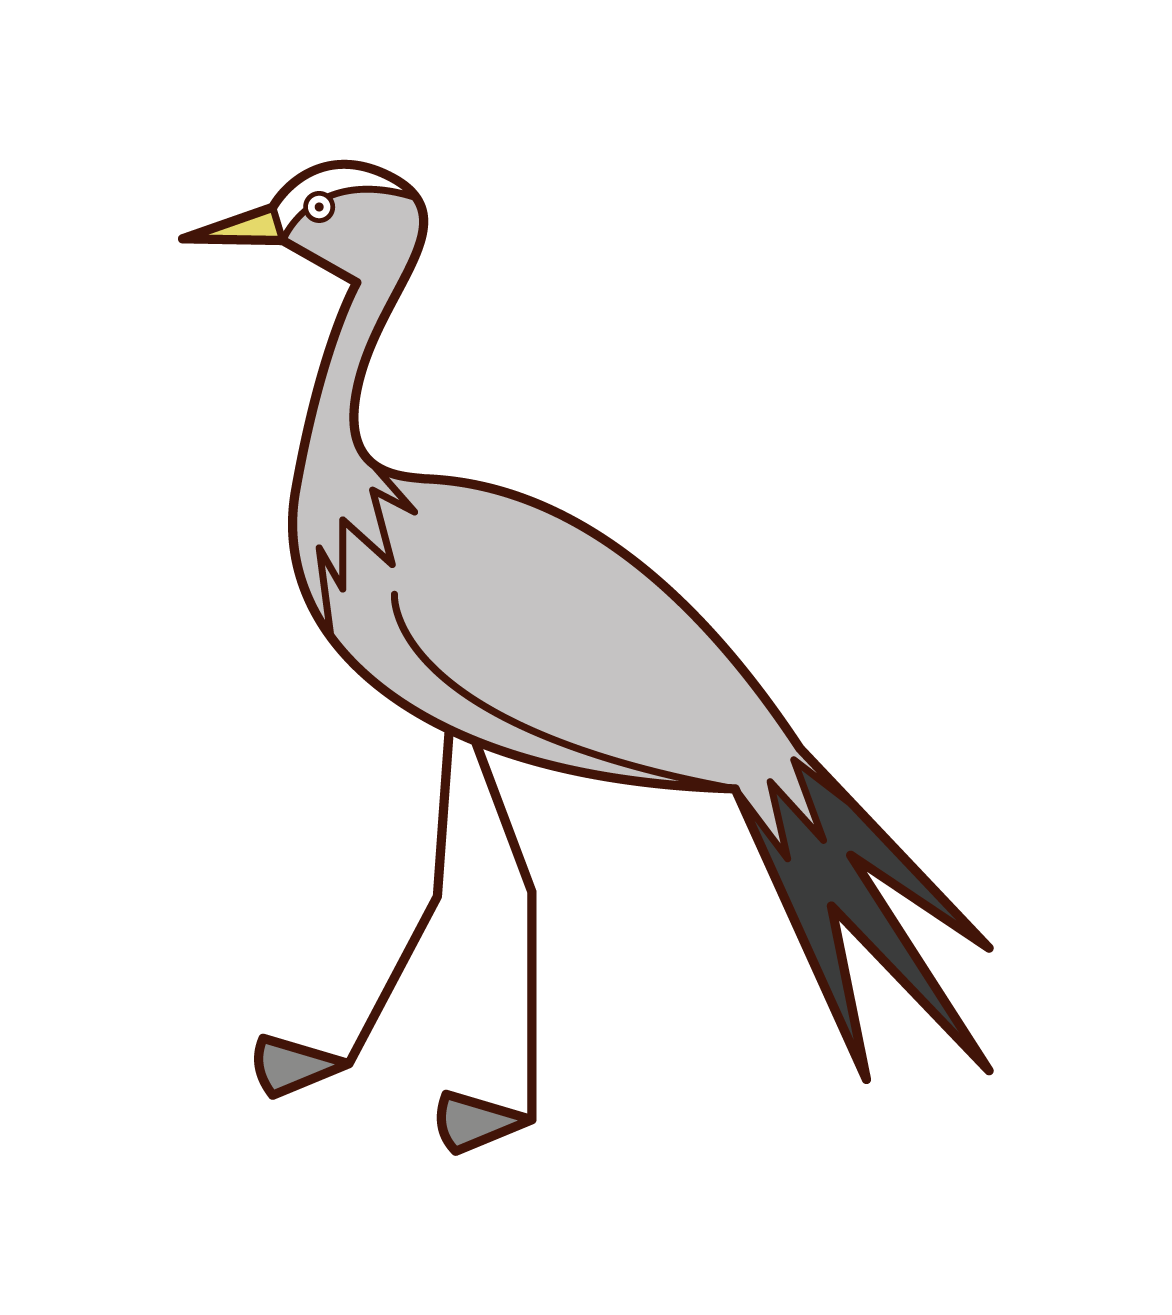 Illustration of a sea eagle